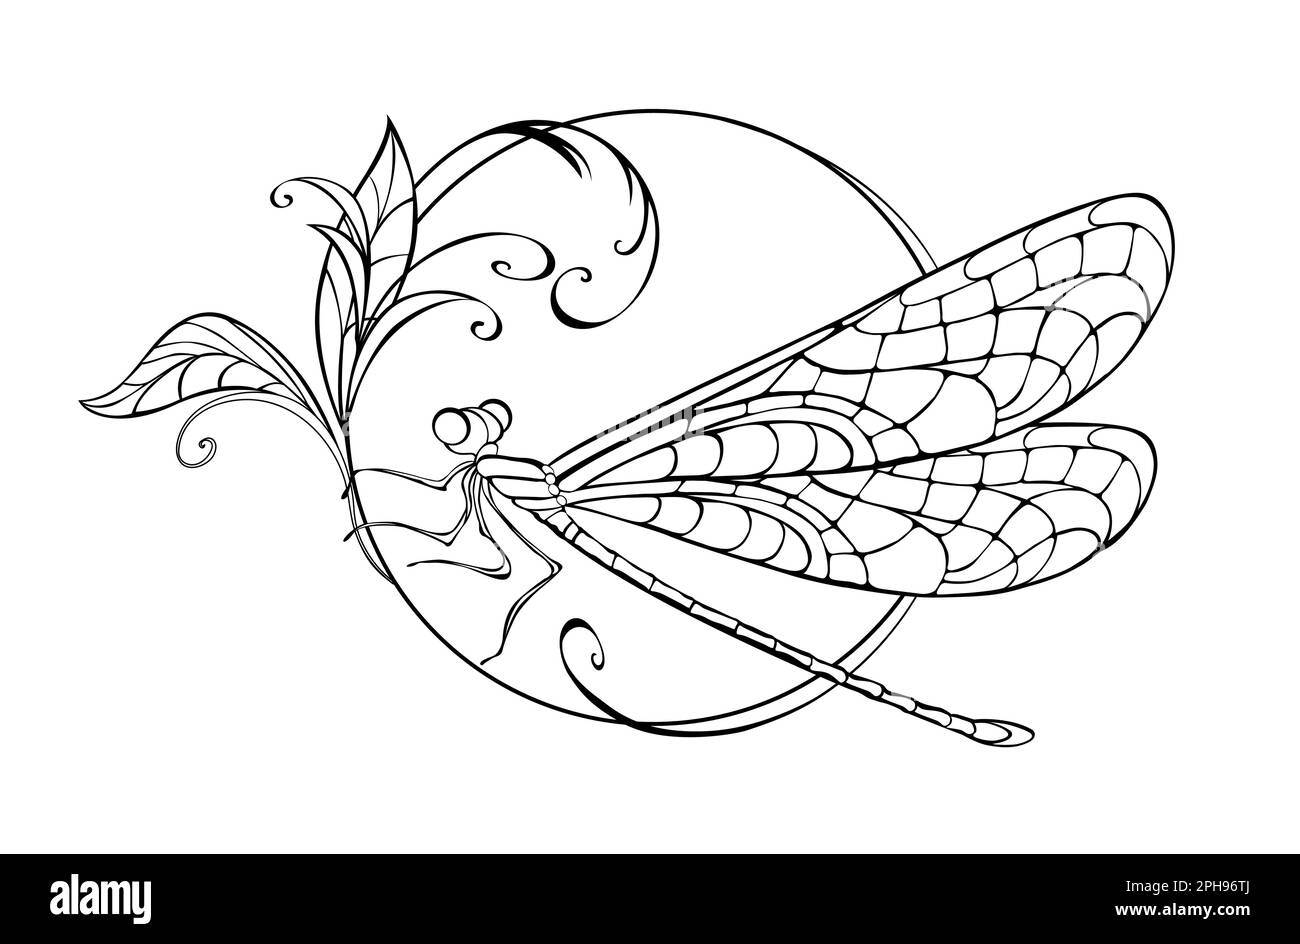 Im Kreis sitzend, künstlerisch gezeichnet, konturierte Libelle mit gemusterten, detaillierten Flügeln auf weißem Hintergrund. Die Originalzeichnung der Libelle. Stock Vektor